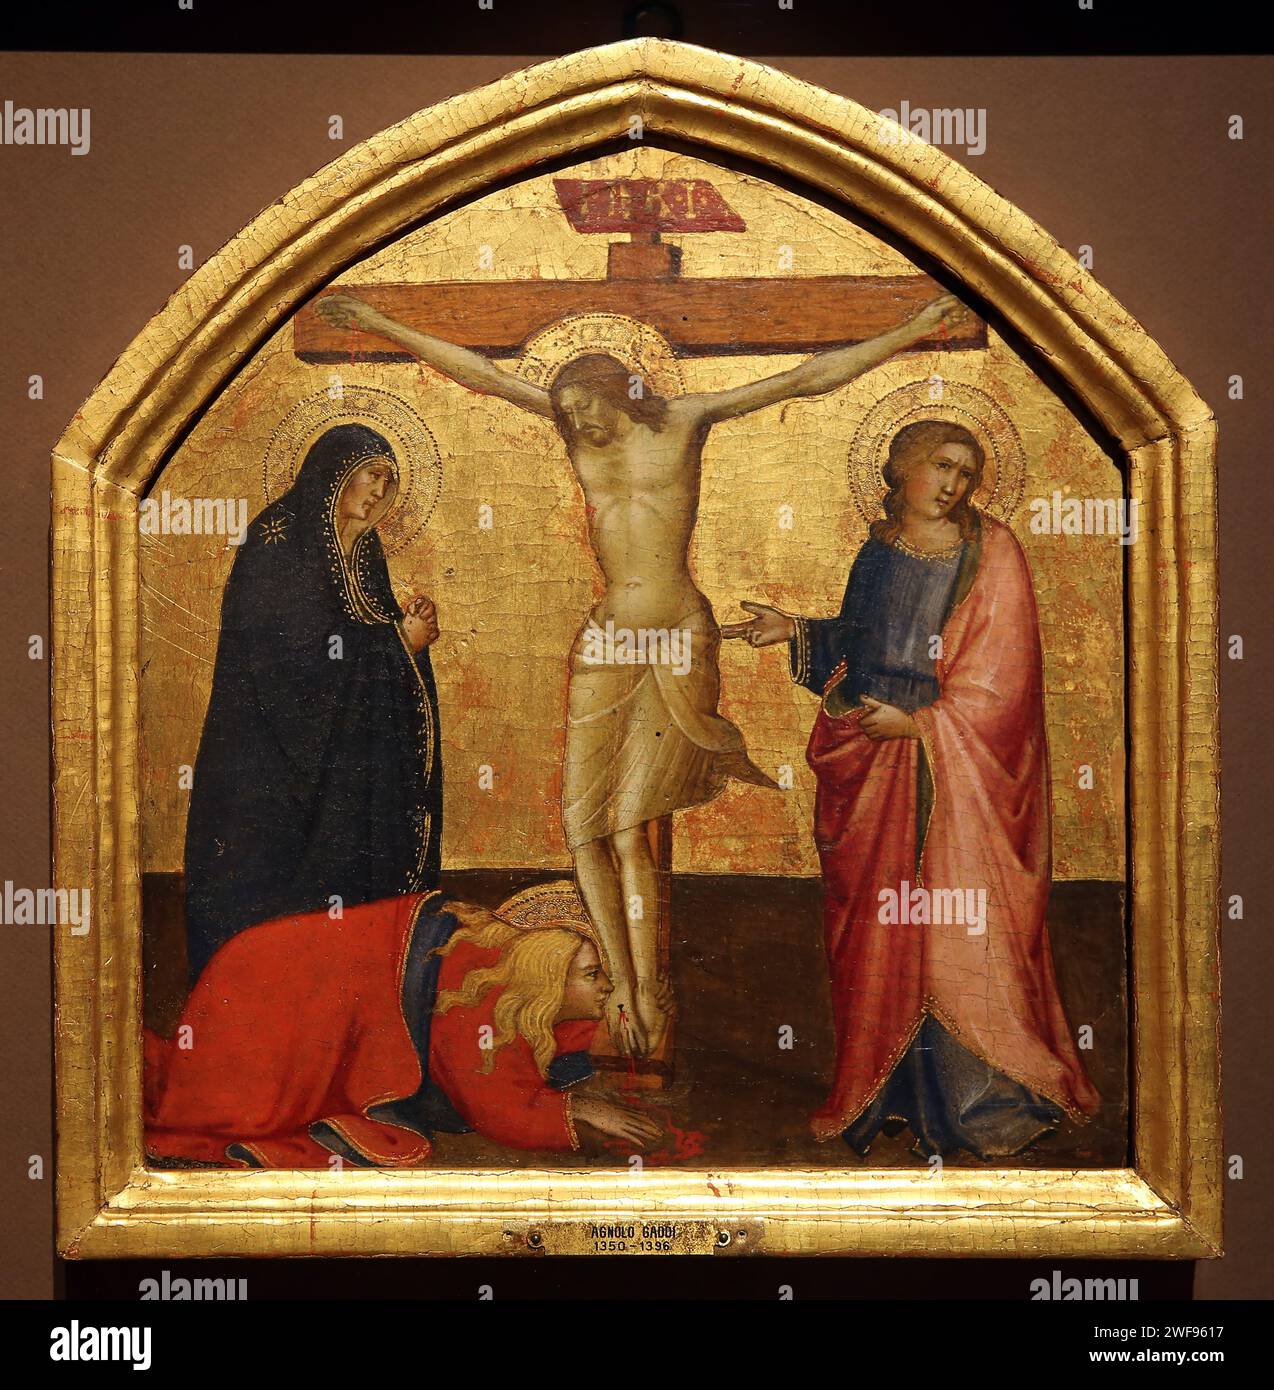 Le Crucifizion, c. 1390 par Angolo Gaddi. Tempera et or sur panneau. Musée Thyssen. Madrid. Espagne. Banque D'Images